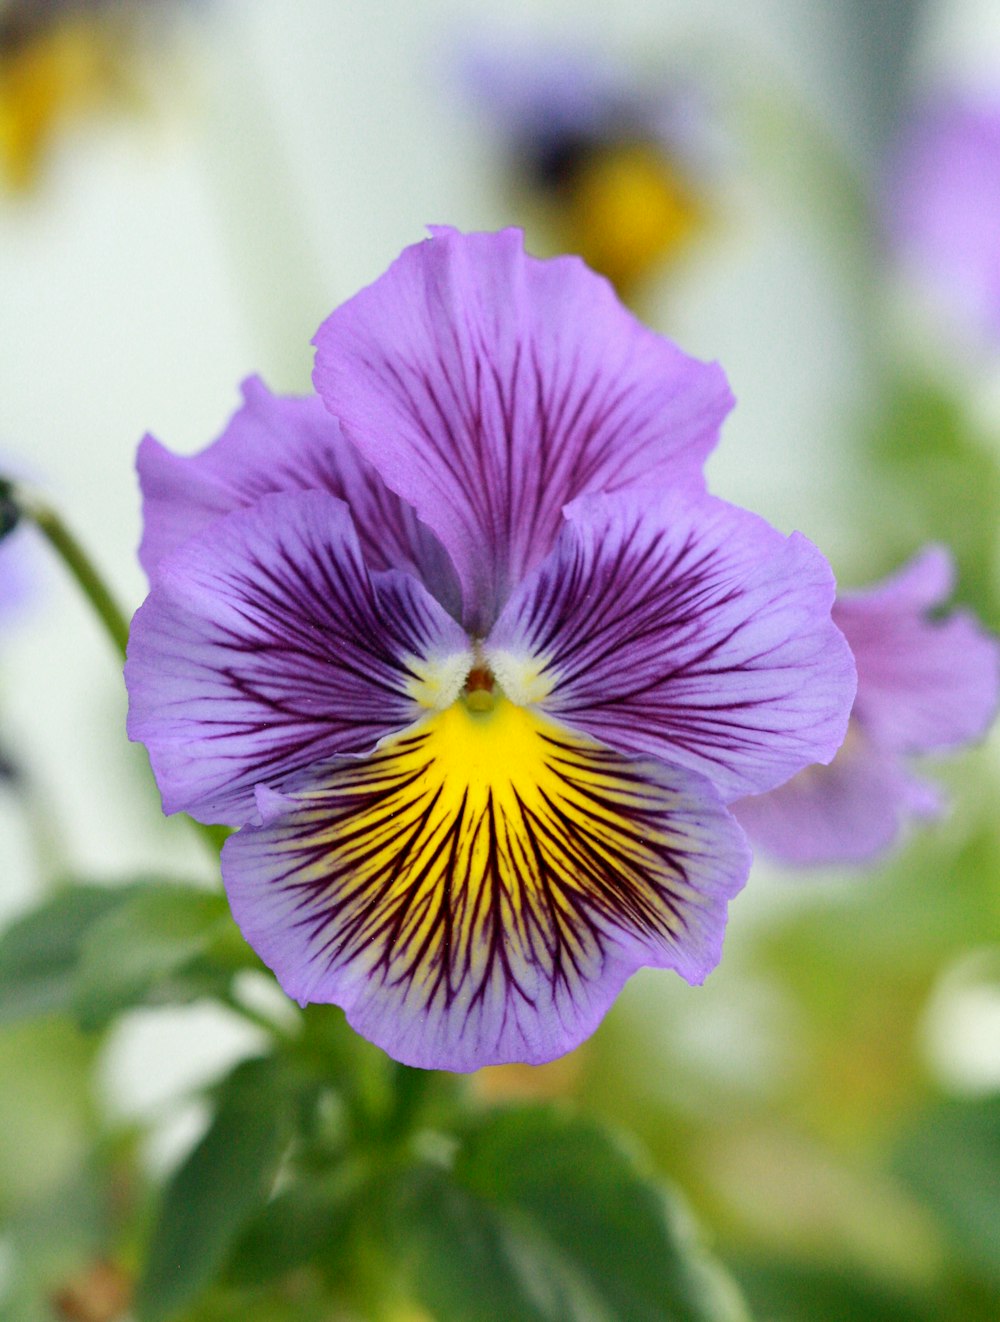 Un primer plano de una flor púrpura con un centro amarillo